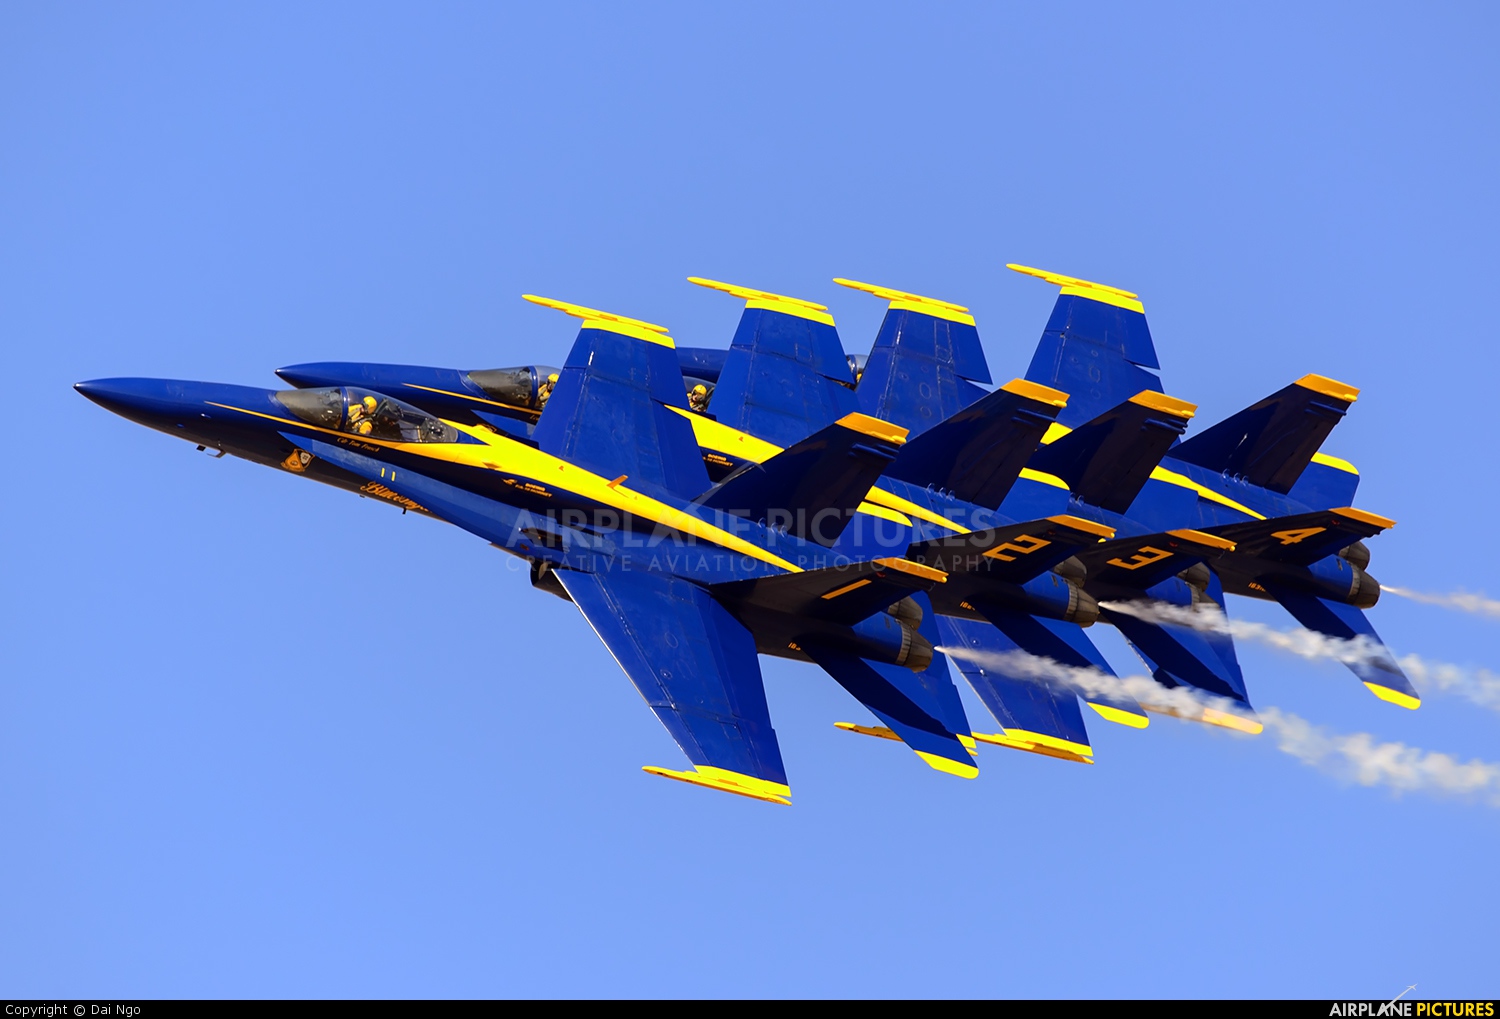 USA - Navy : Blue Angels 163498 aircraft at El Centro NAS